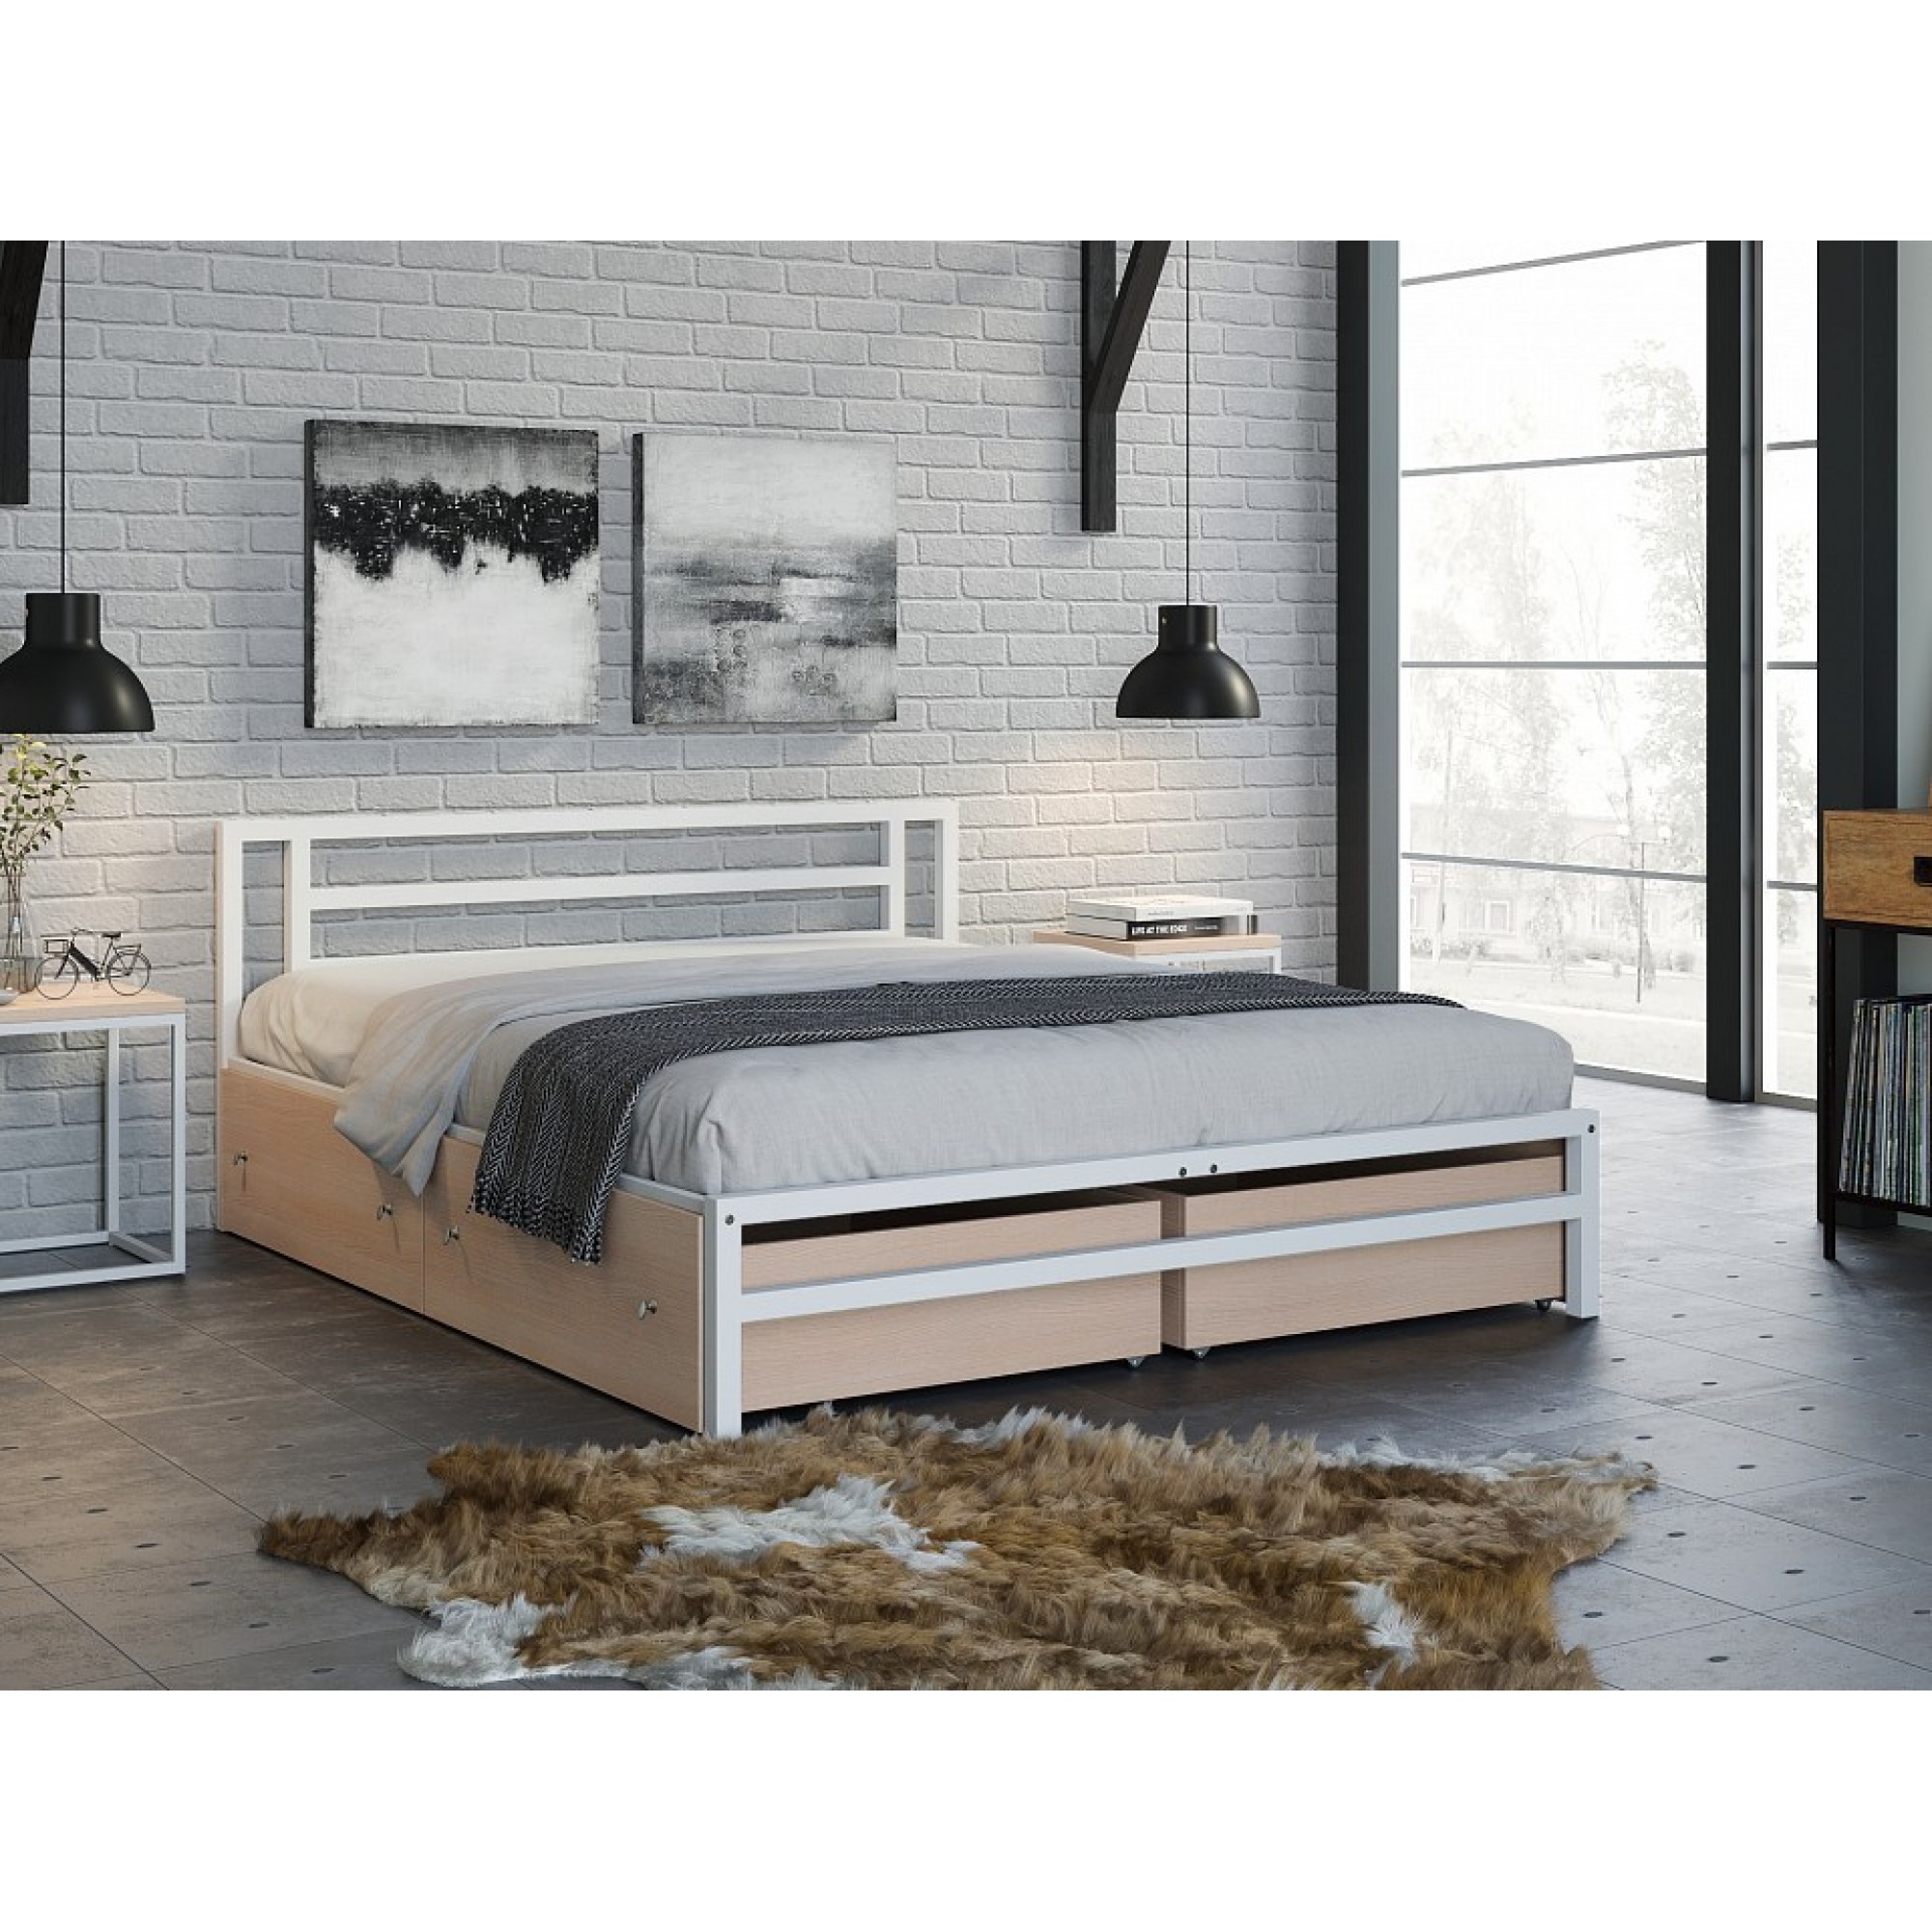 Кровать двуспальная Титан    FSN_4S-TI-4y-dub-9003